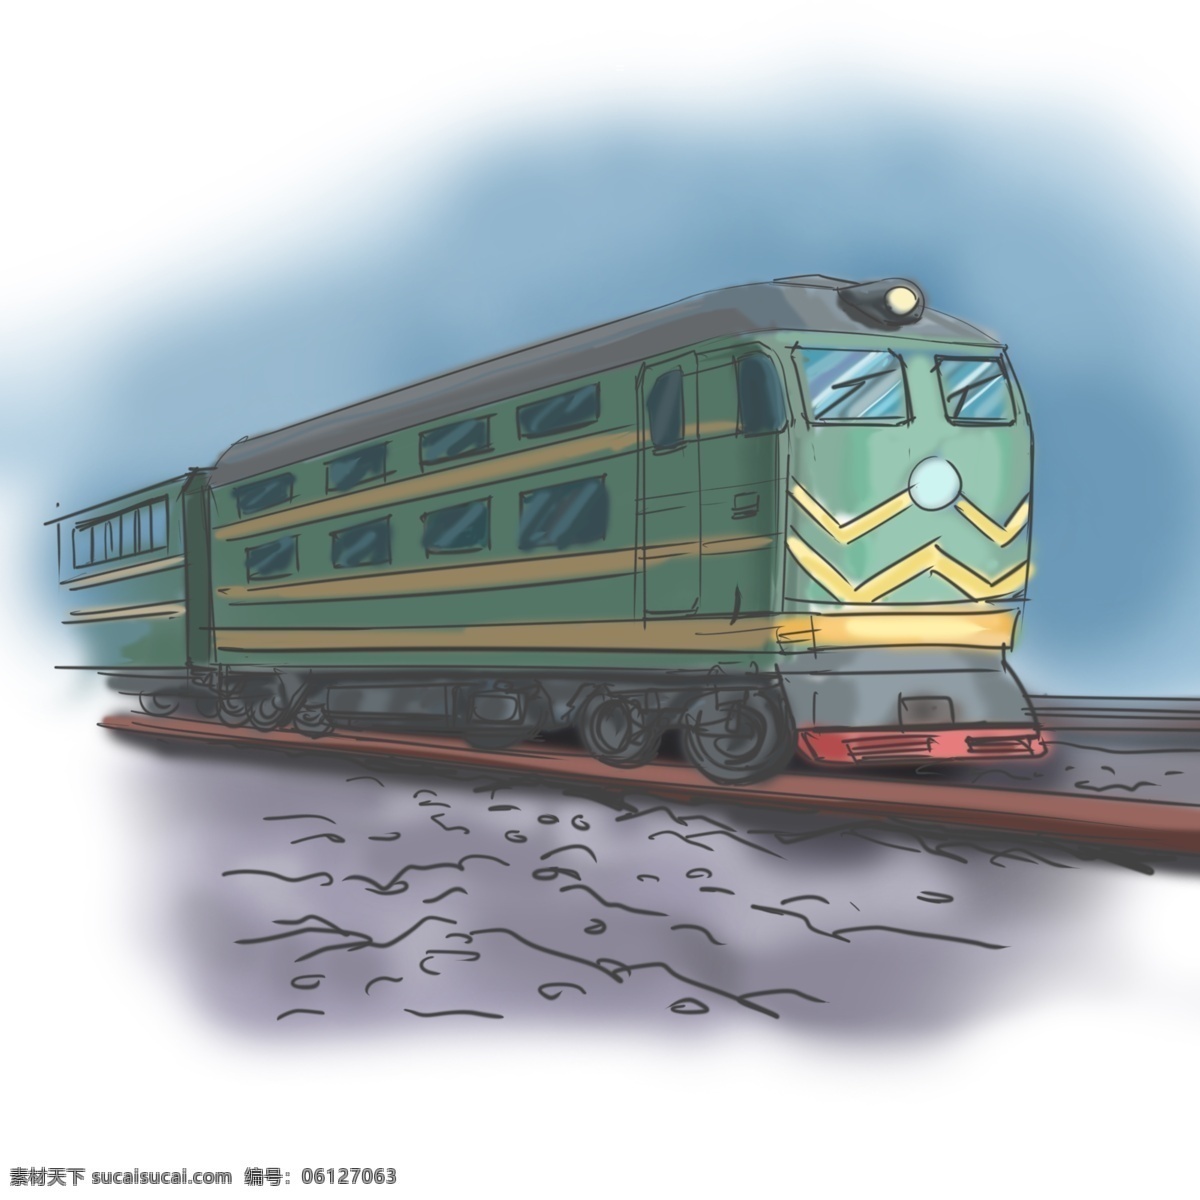 火车 绿皮 卡通 手绘 插画 火车头 列车 绿皮车 老式卧铺车 铁轨 沙土 低速行驶 旅行 卡通风格 插画手绘